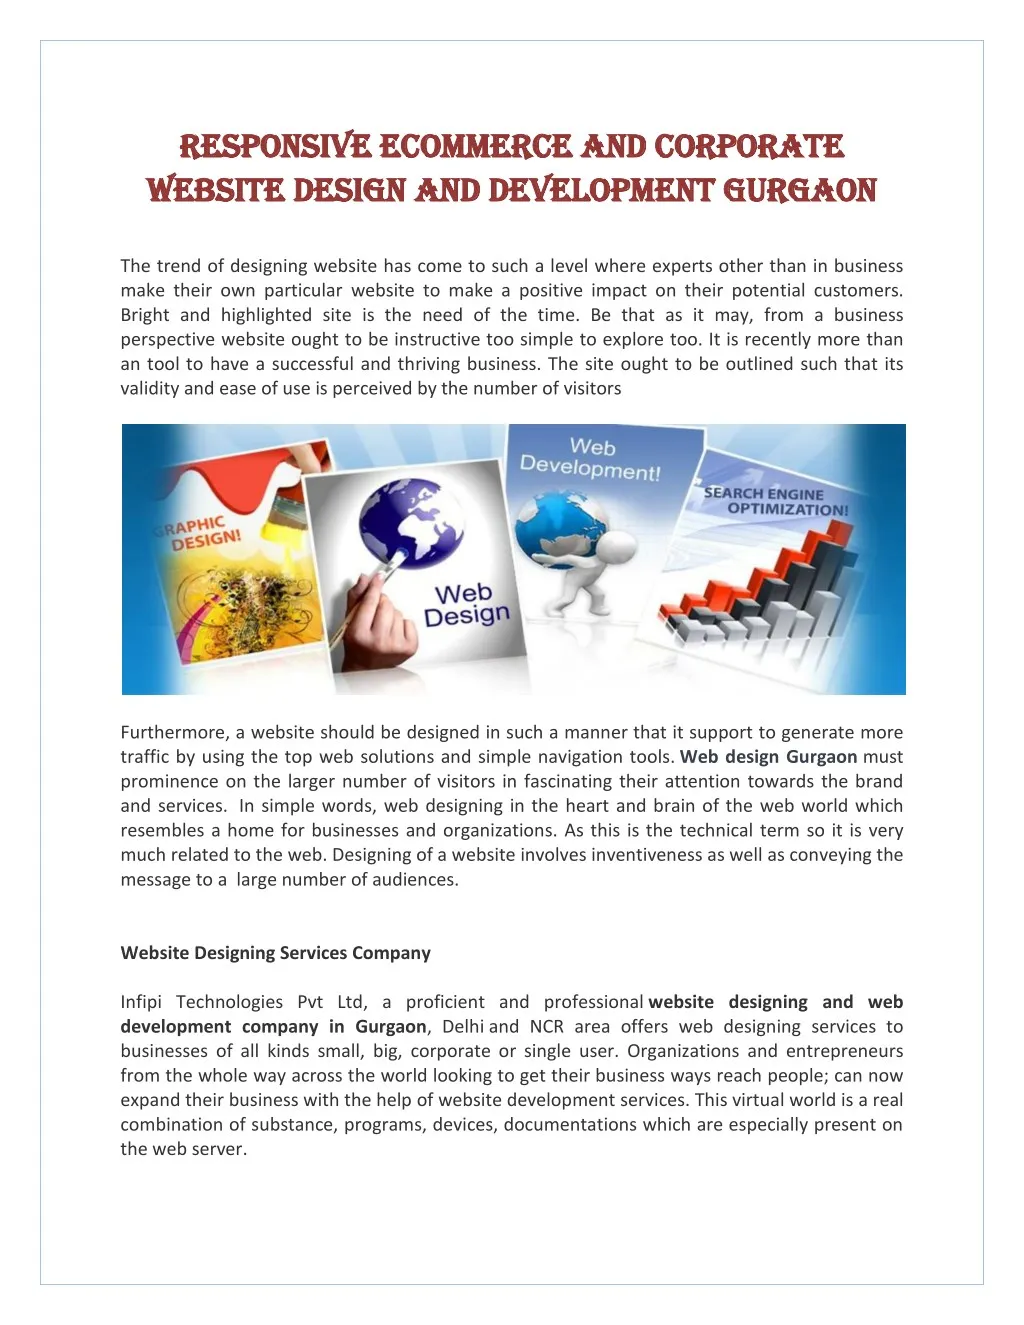 responsive responsive ecommerce website website